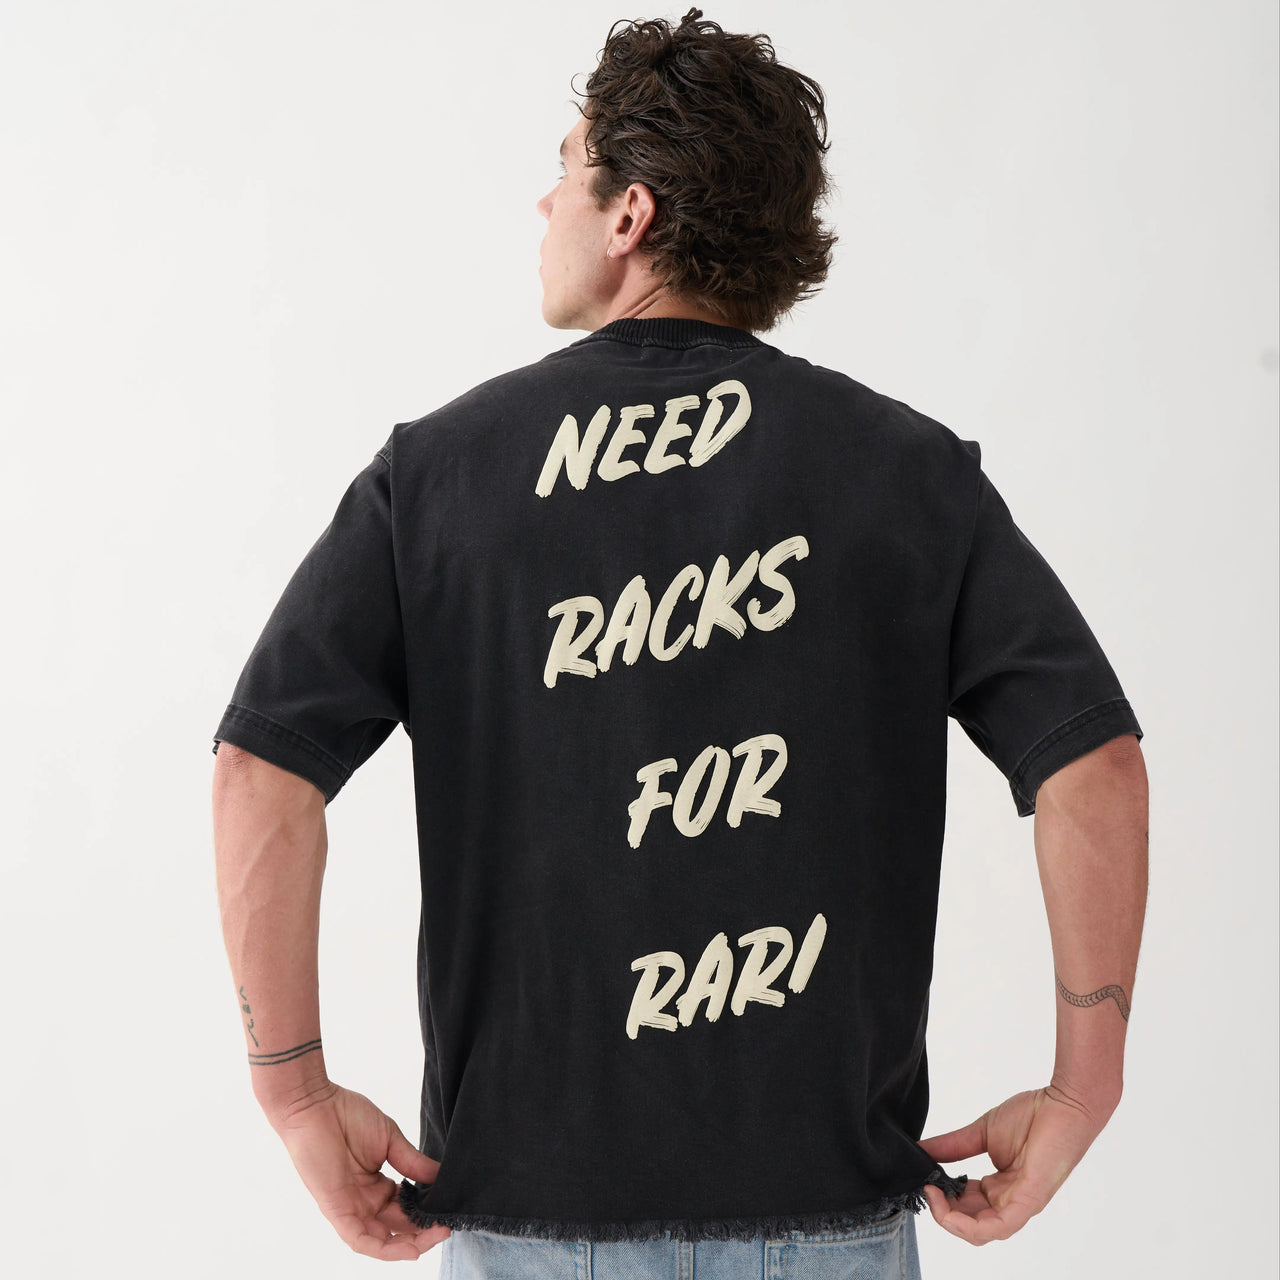 NEED RACKS FOR RARI T-SHIRT